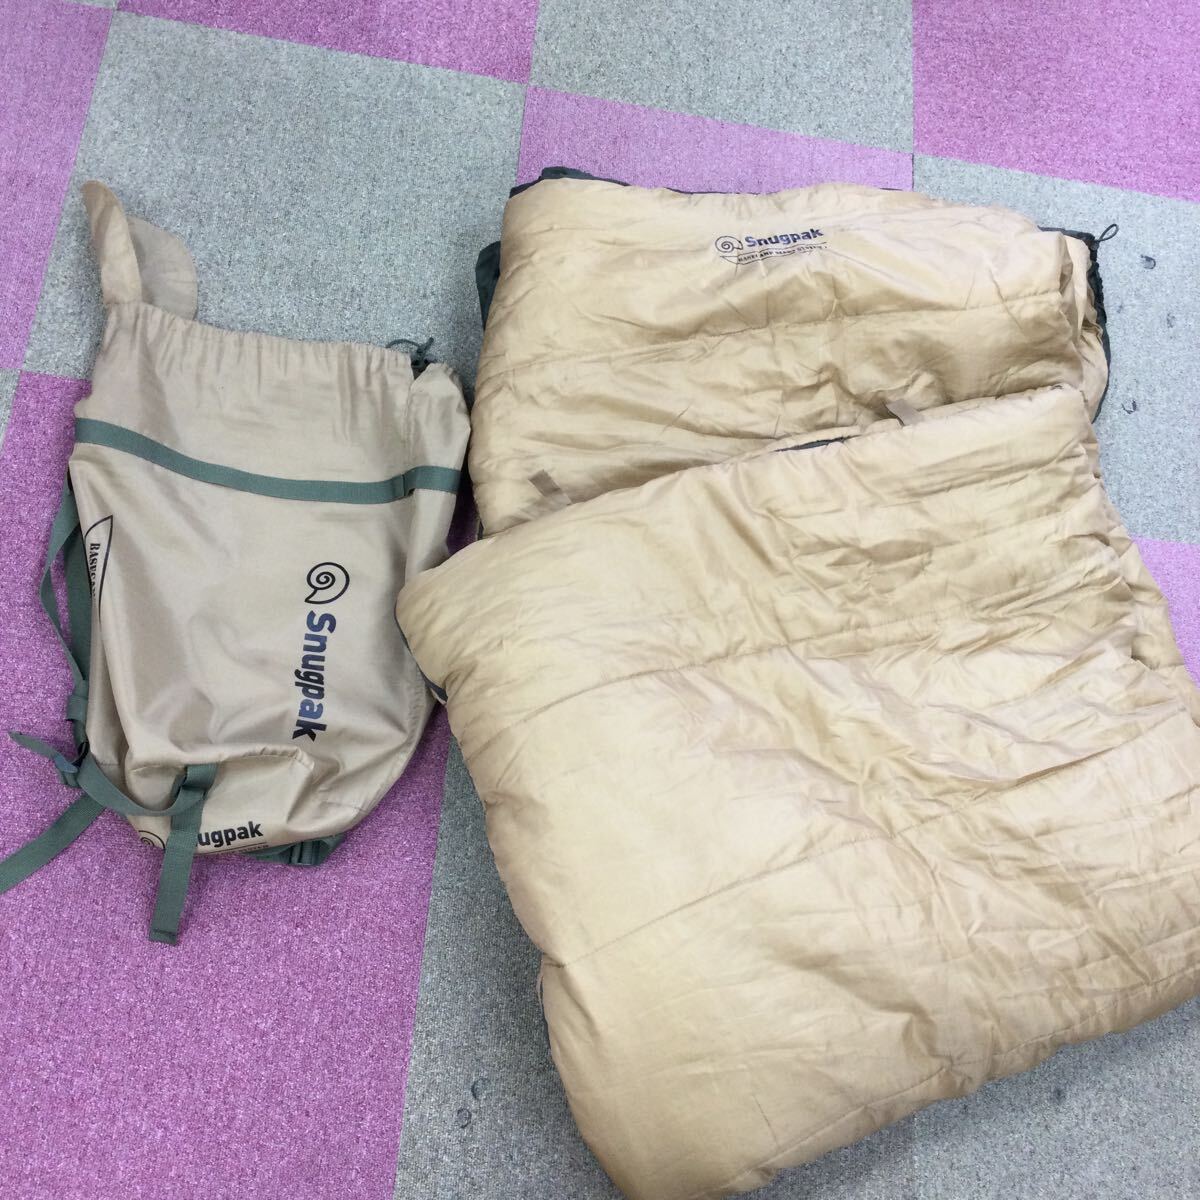 ◎【Snugpak/スナグパック】BASECAMP SLEEP SYSTEM 寝袋 マット テント アウトドア キャンプ用品 キャンプ ベージュ カーキの画像1